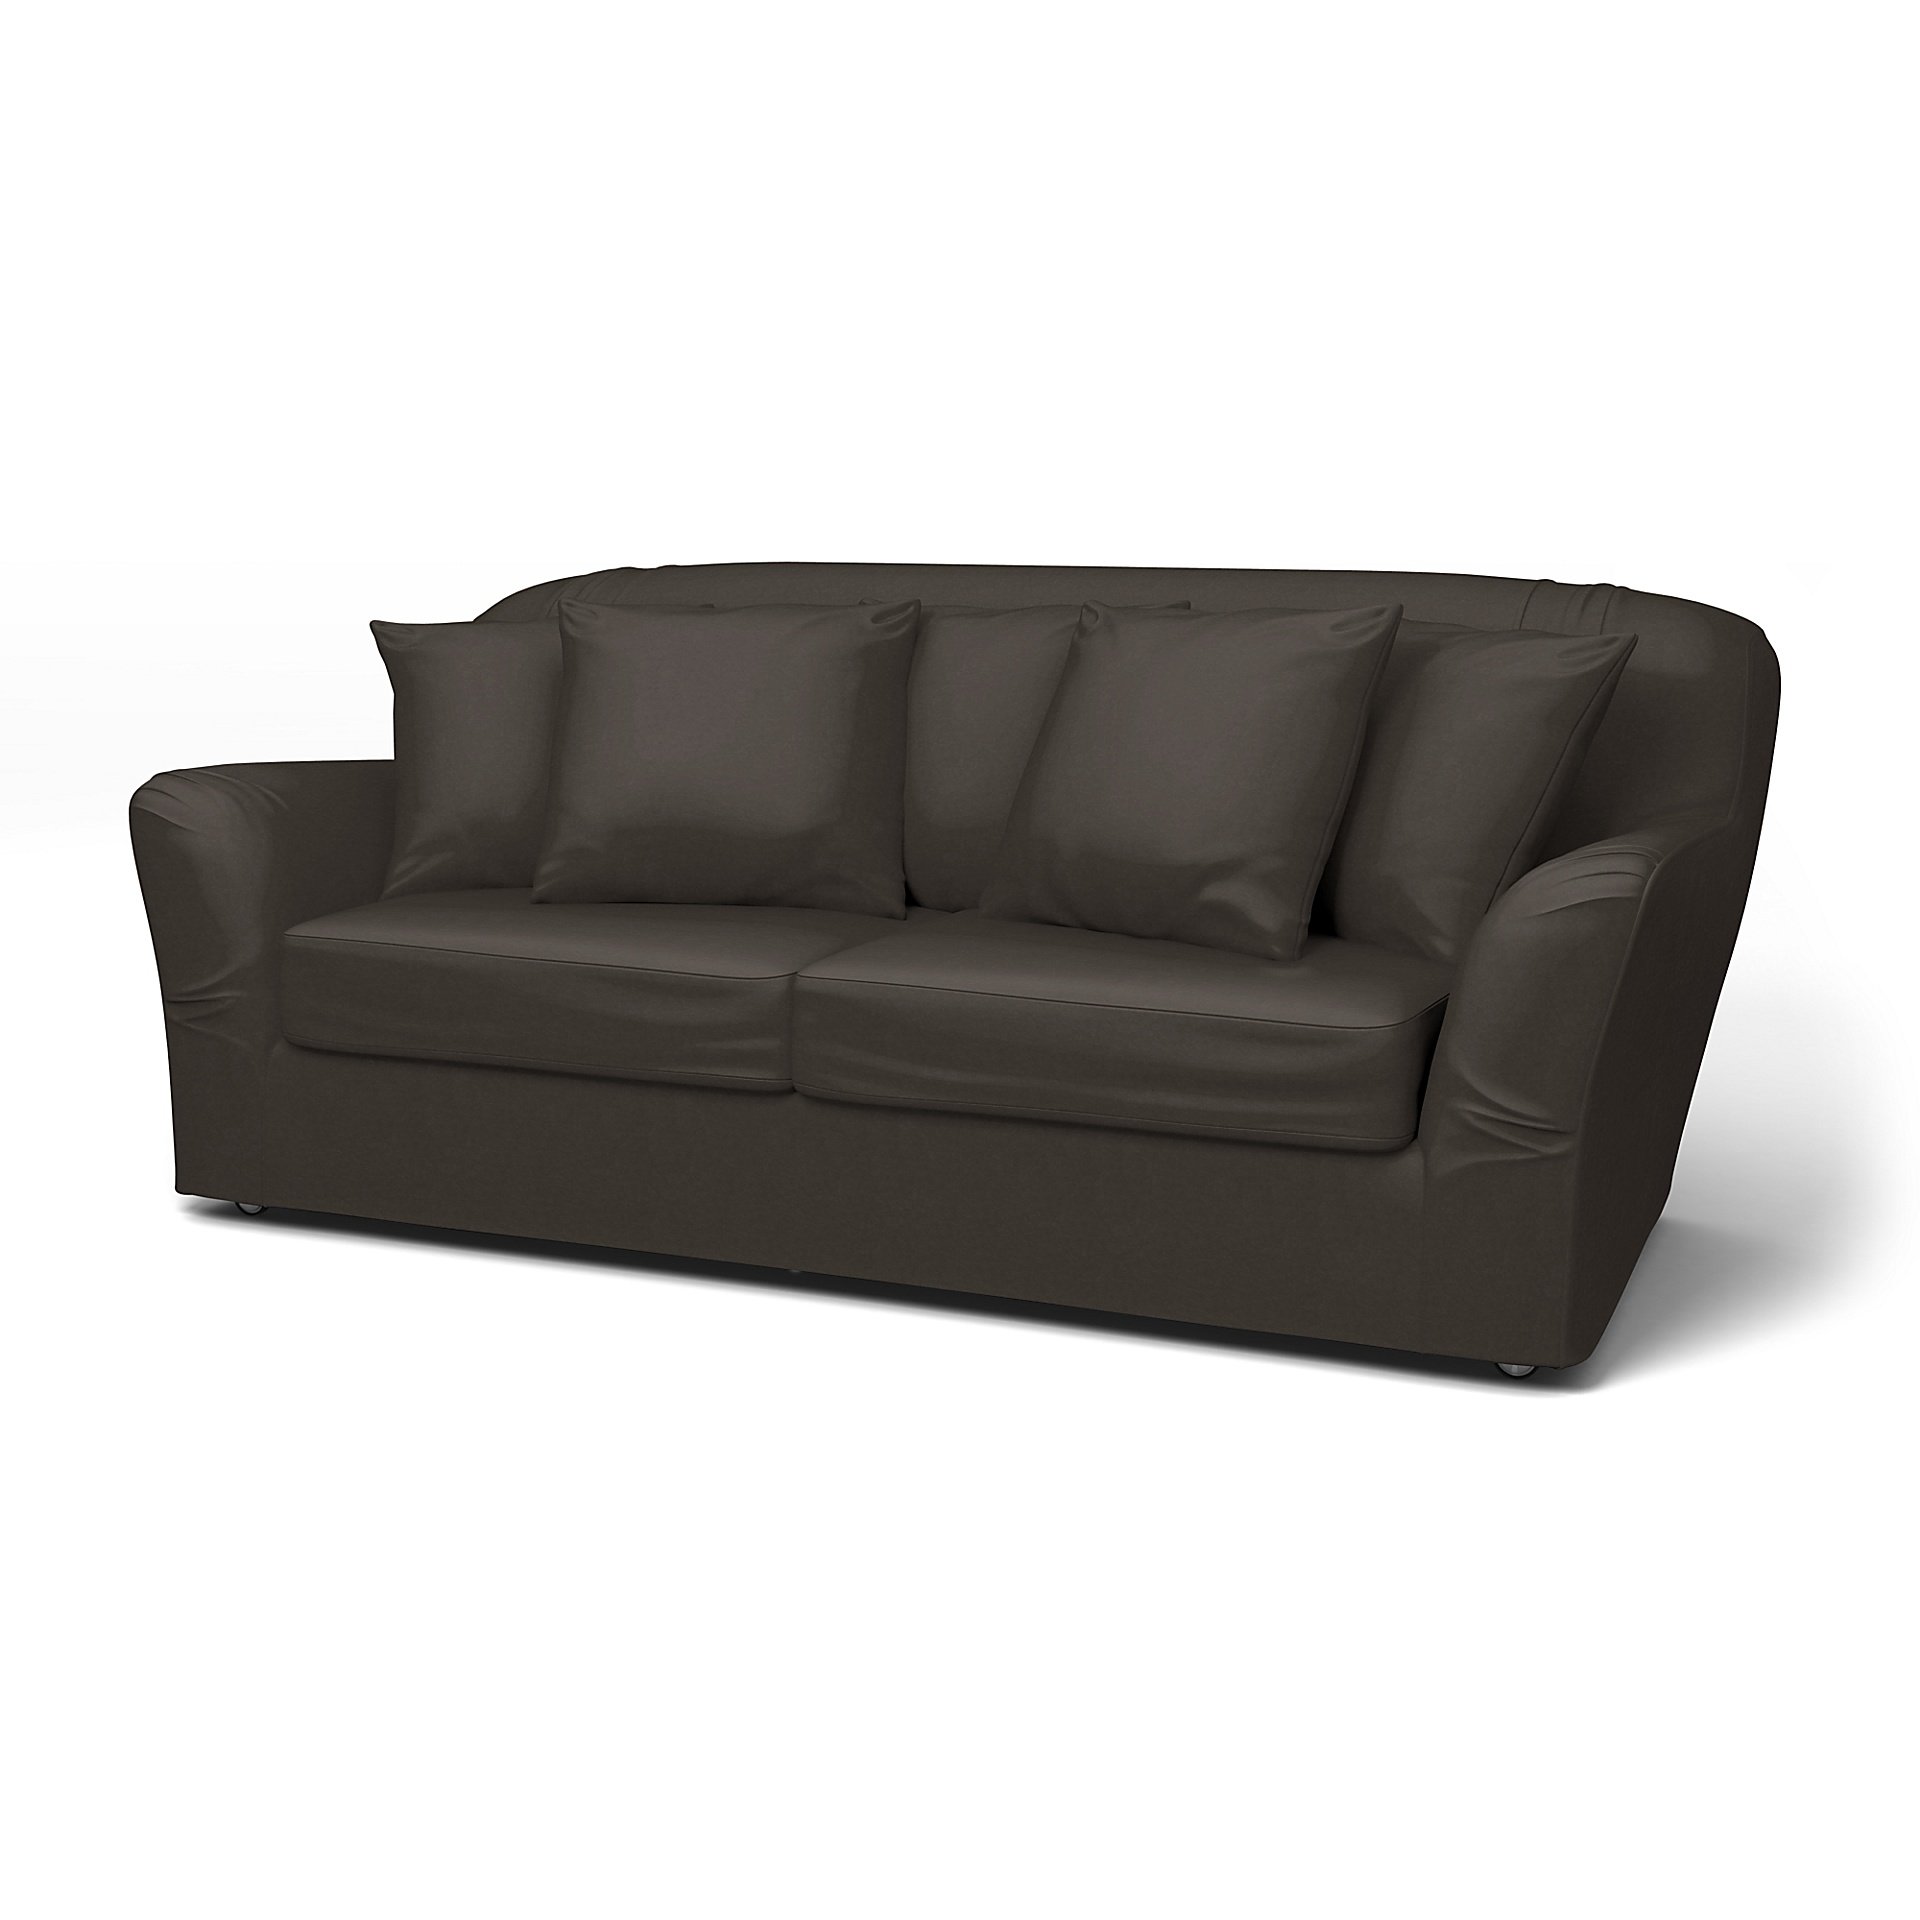 IKEA - Tomelilla sofa bed (Standard model), Licorice, Velvet - Bemz